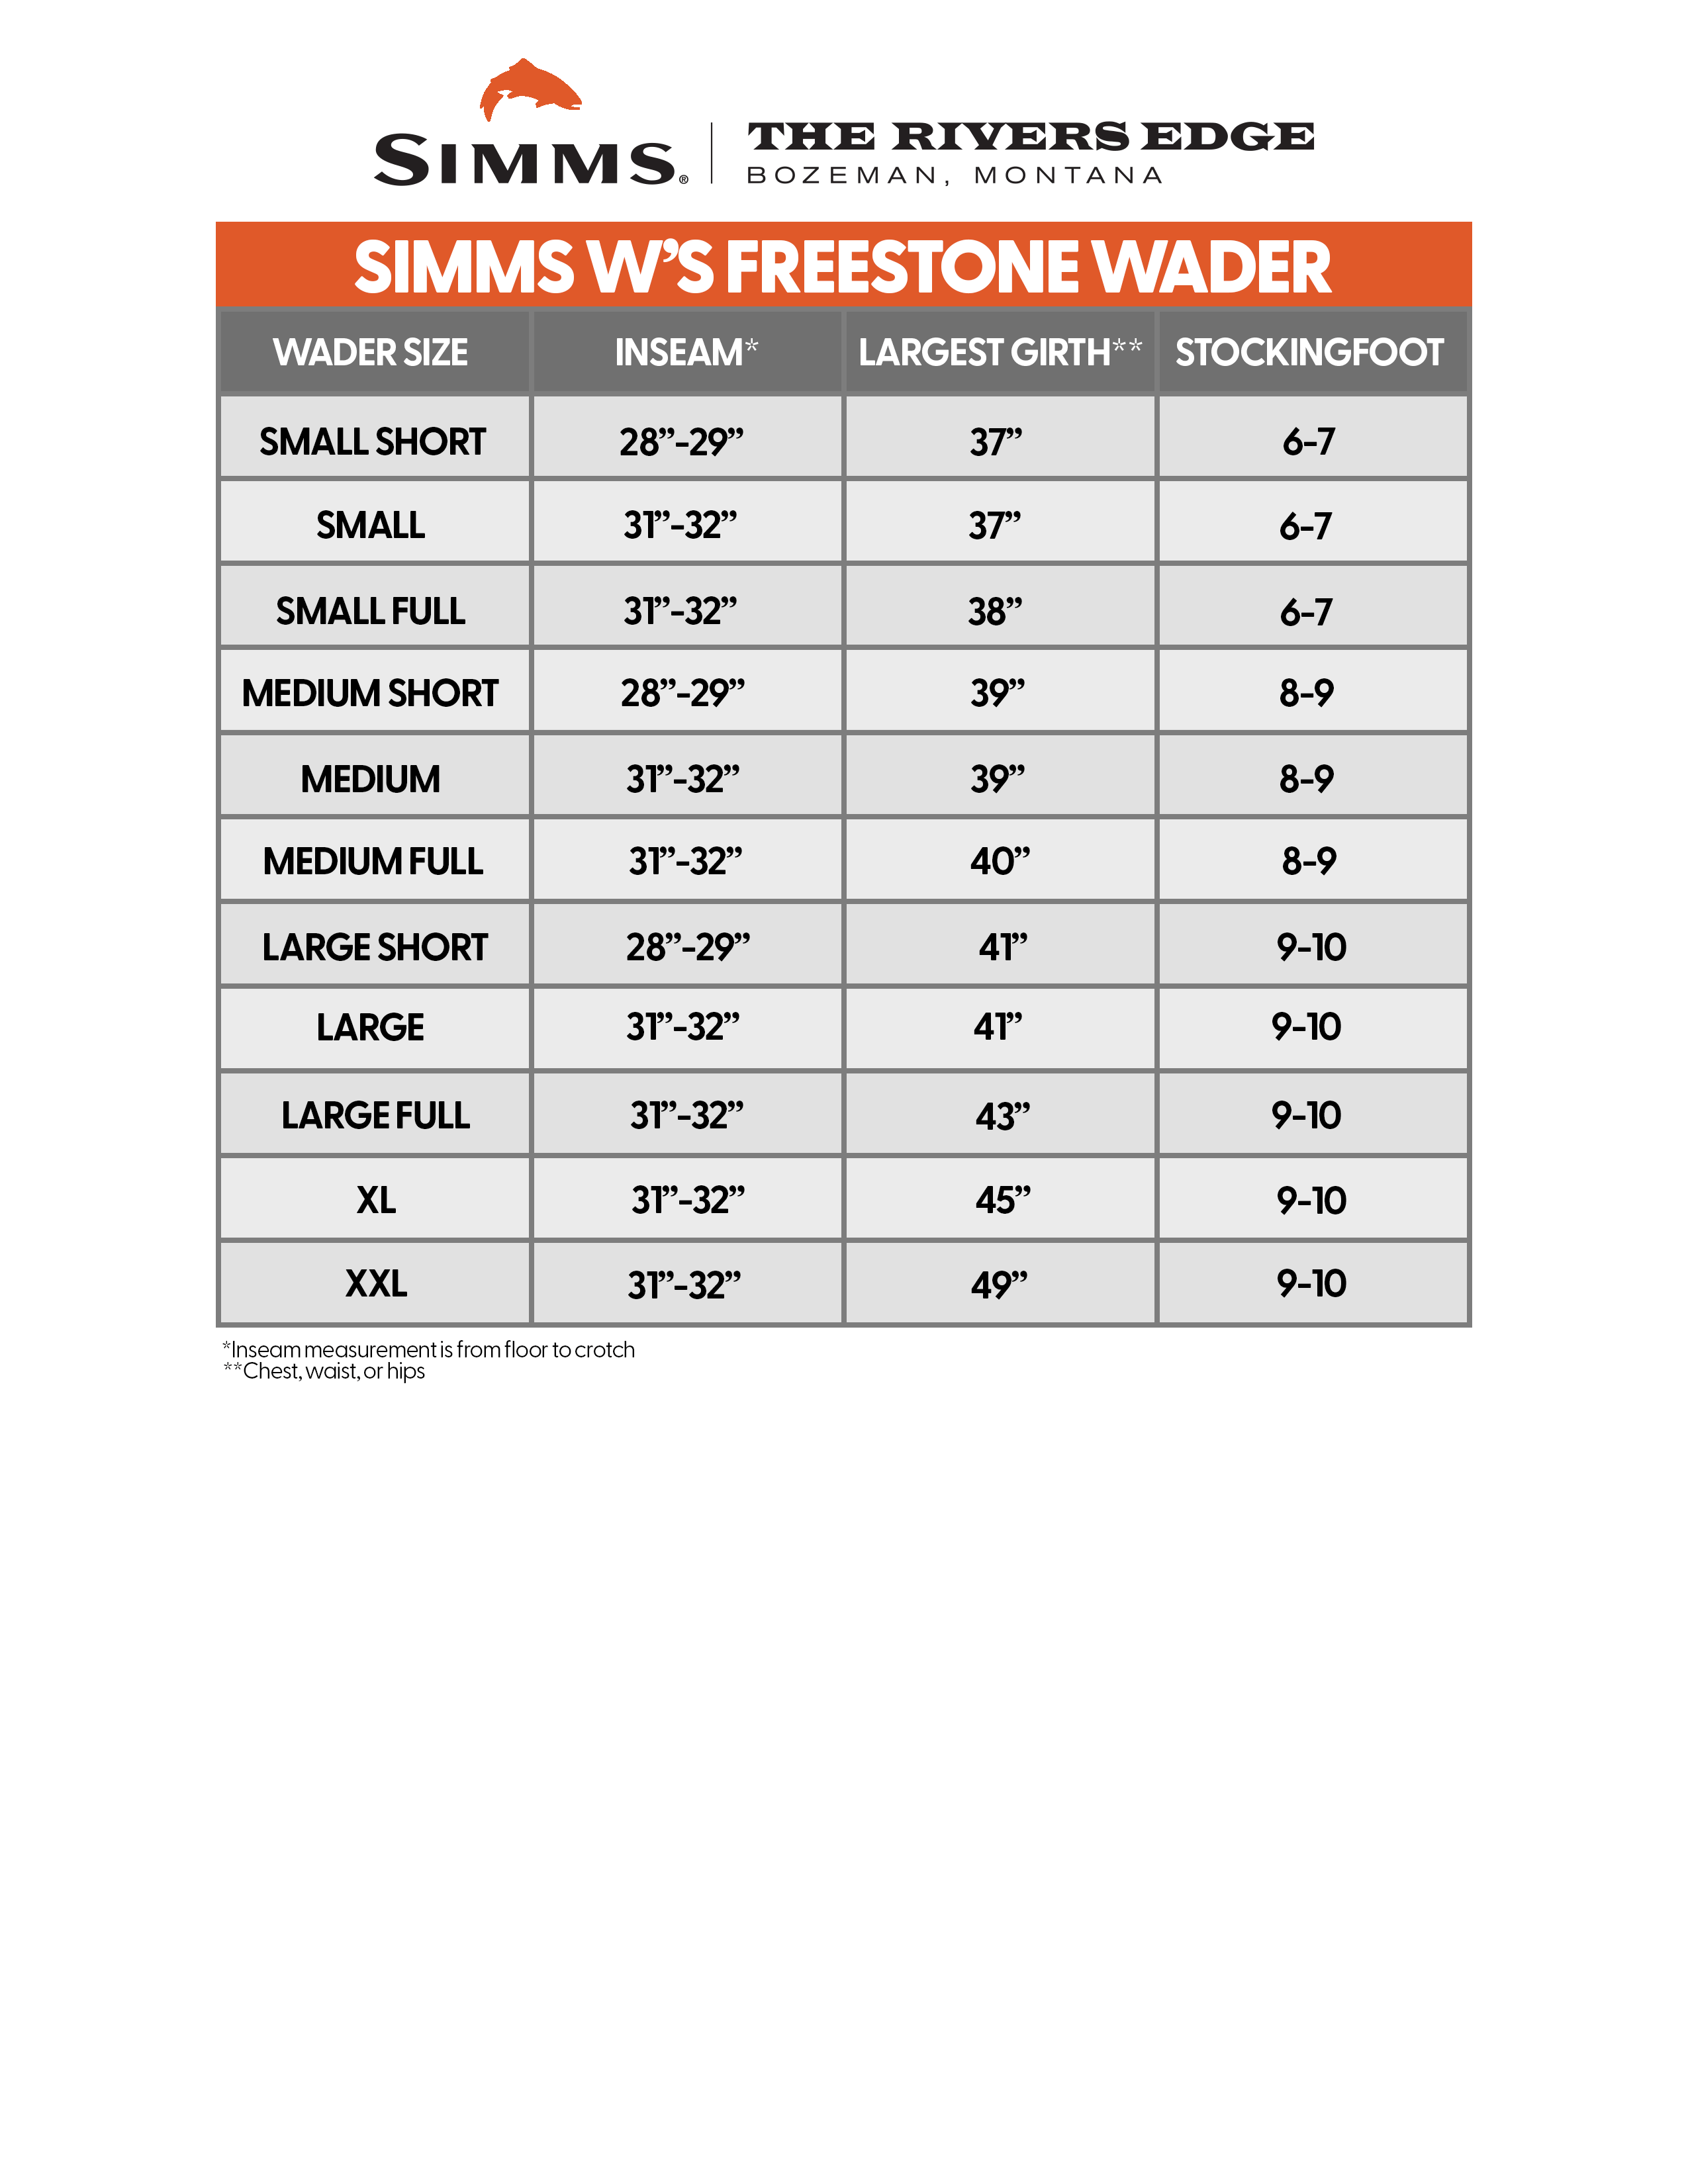 Simms Women's Freestone Wader Size Chart